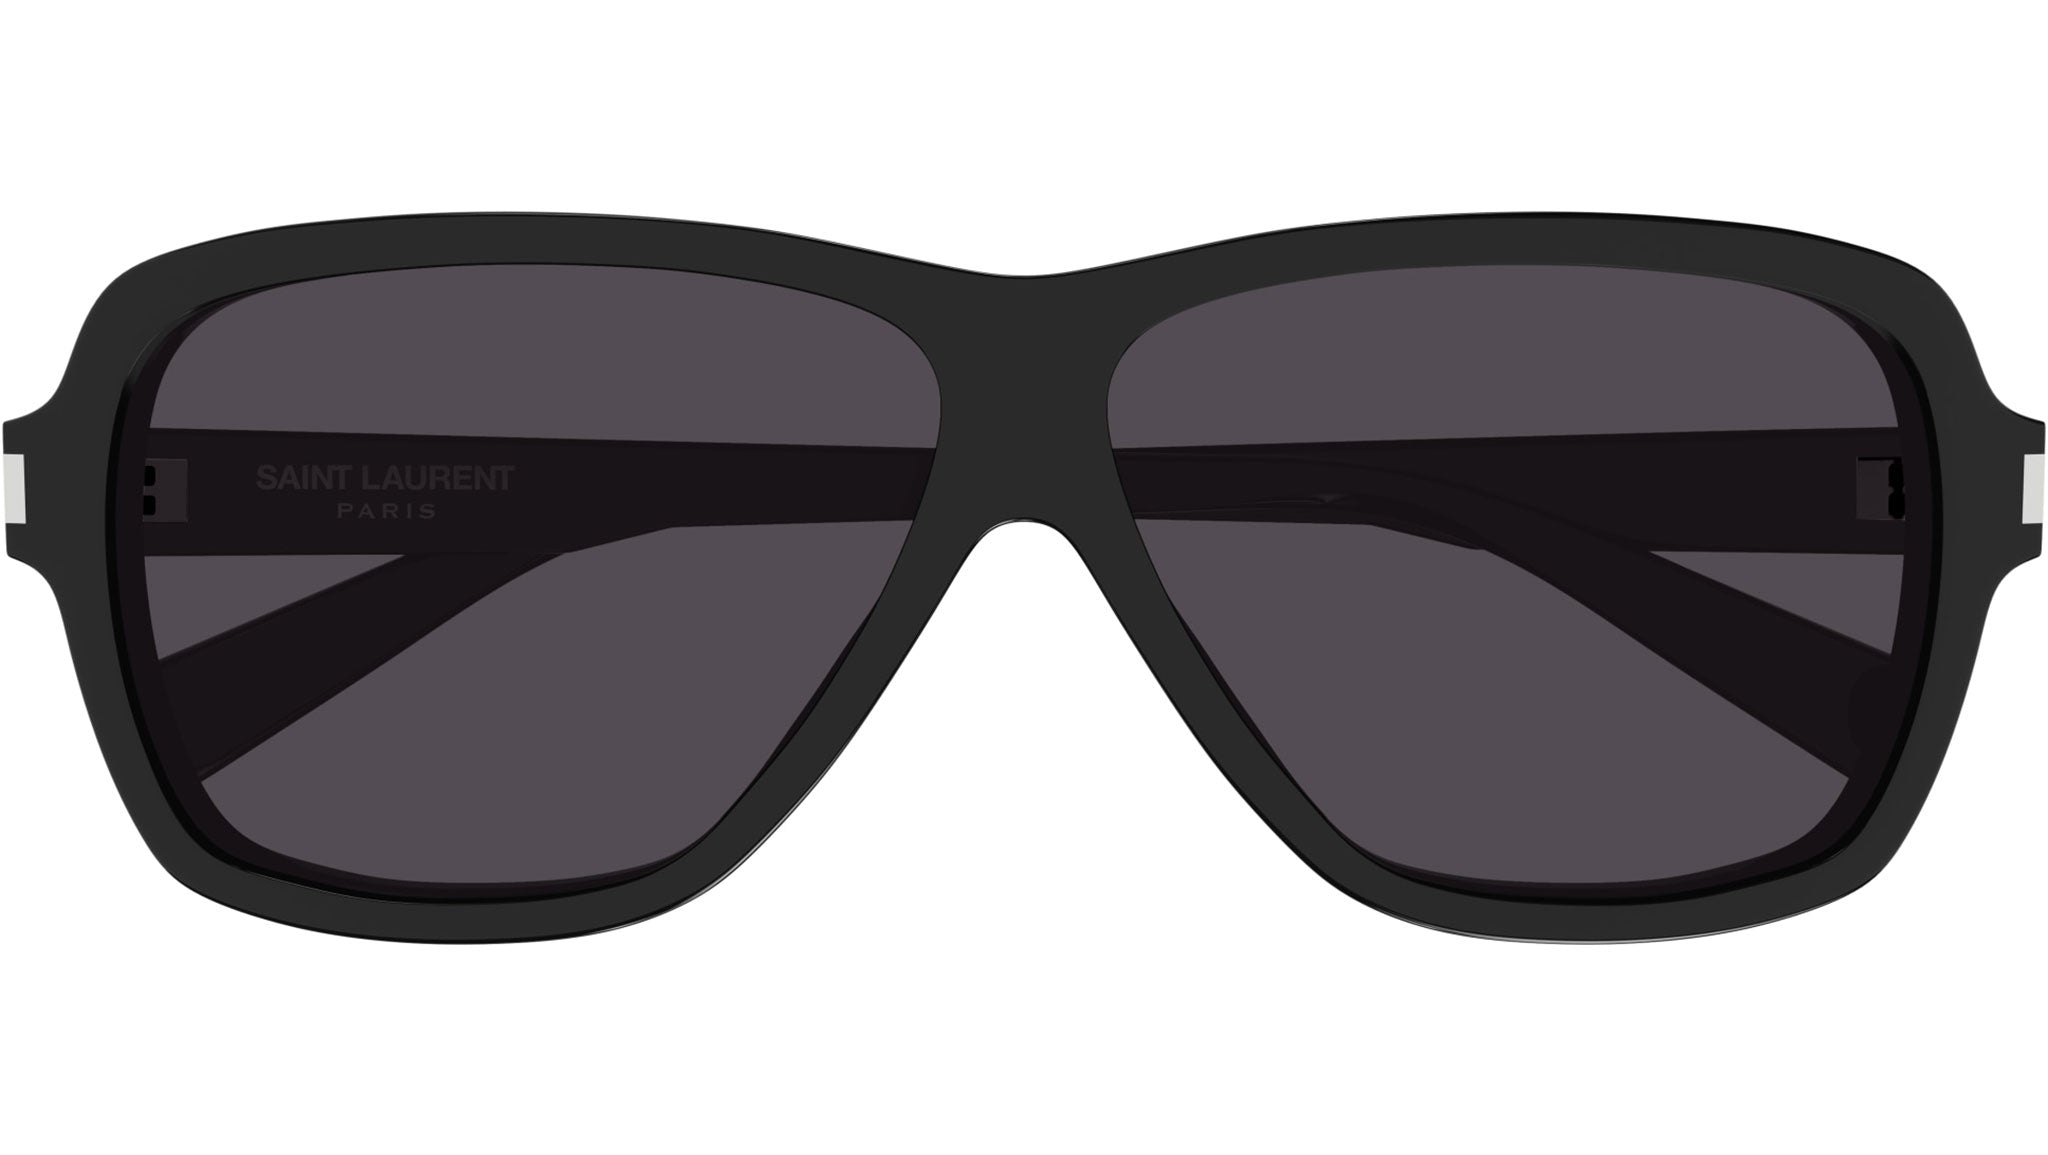 Saint Laurent SL 609 CAROLYN Sunglasses 001 Shiny Black